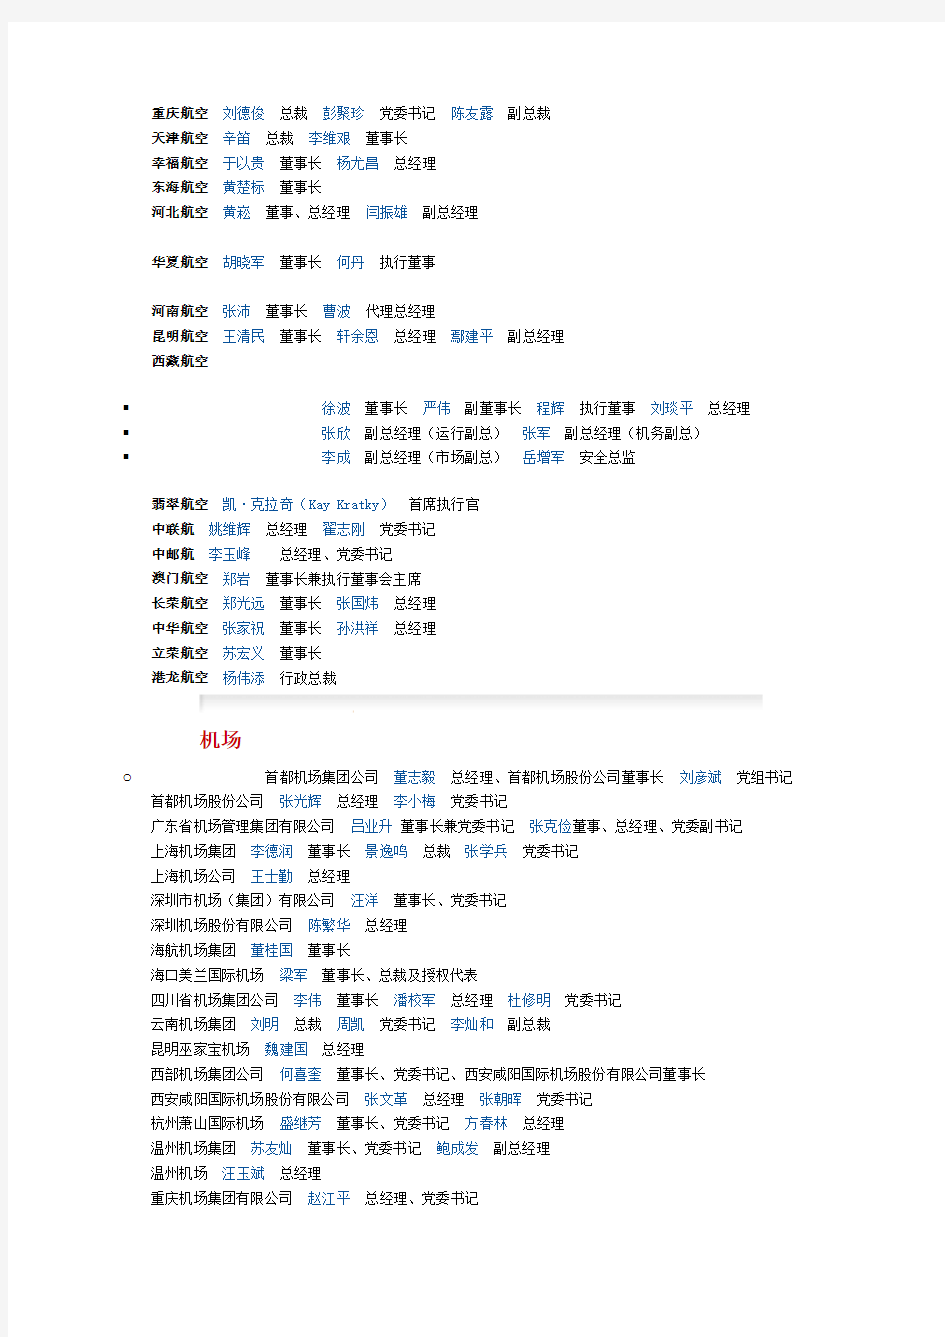 中国民航主要企业领导名单(2013版)